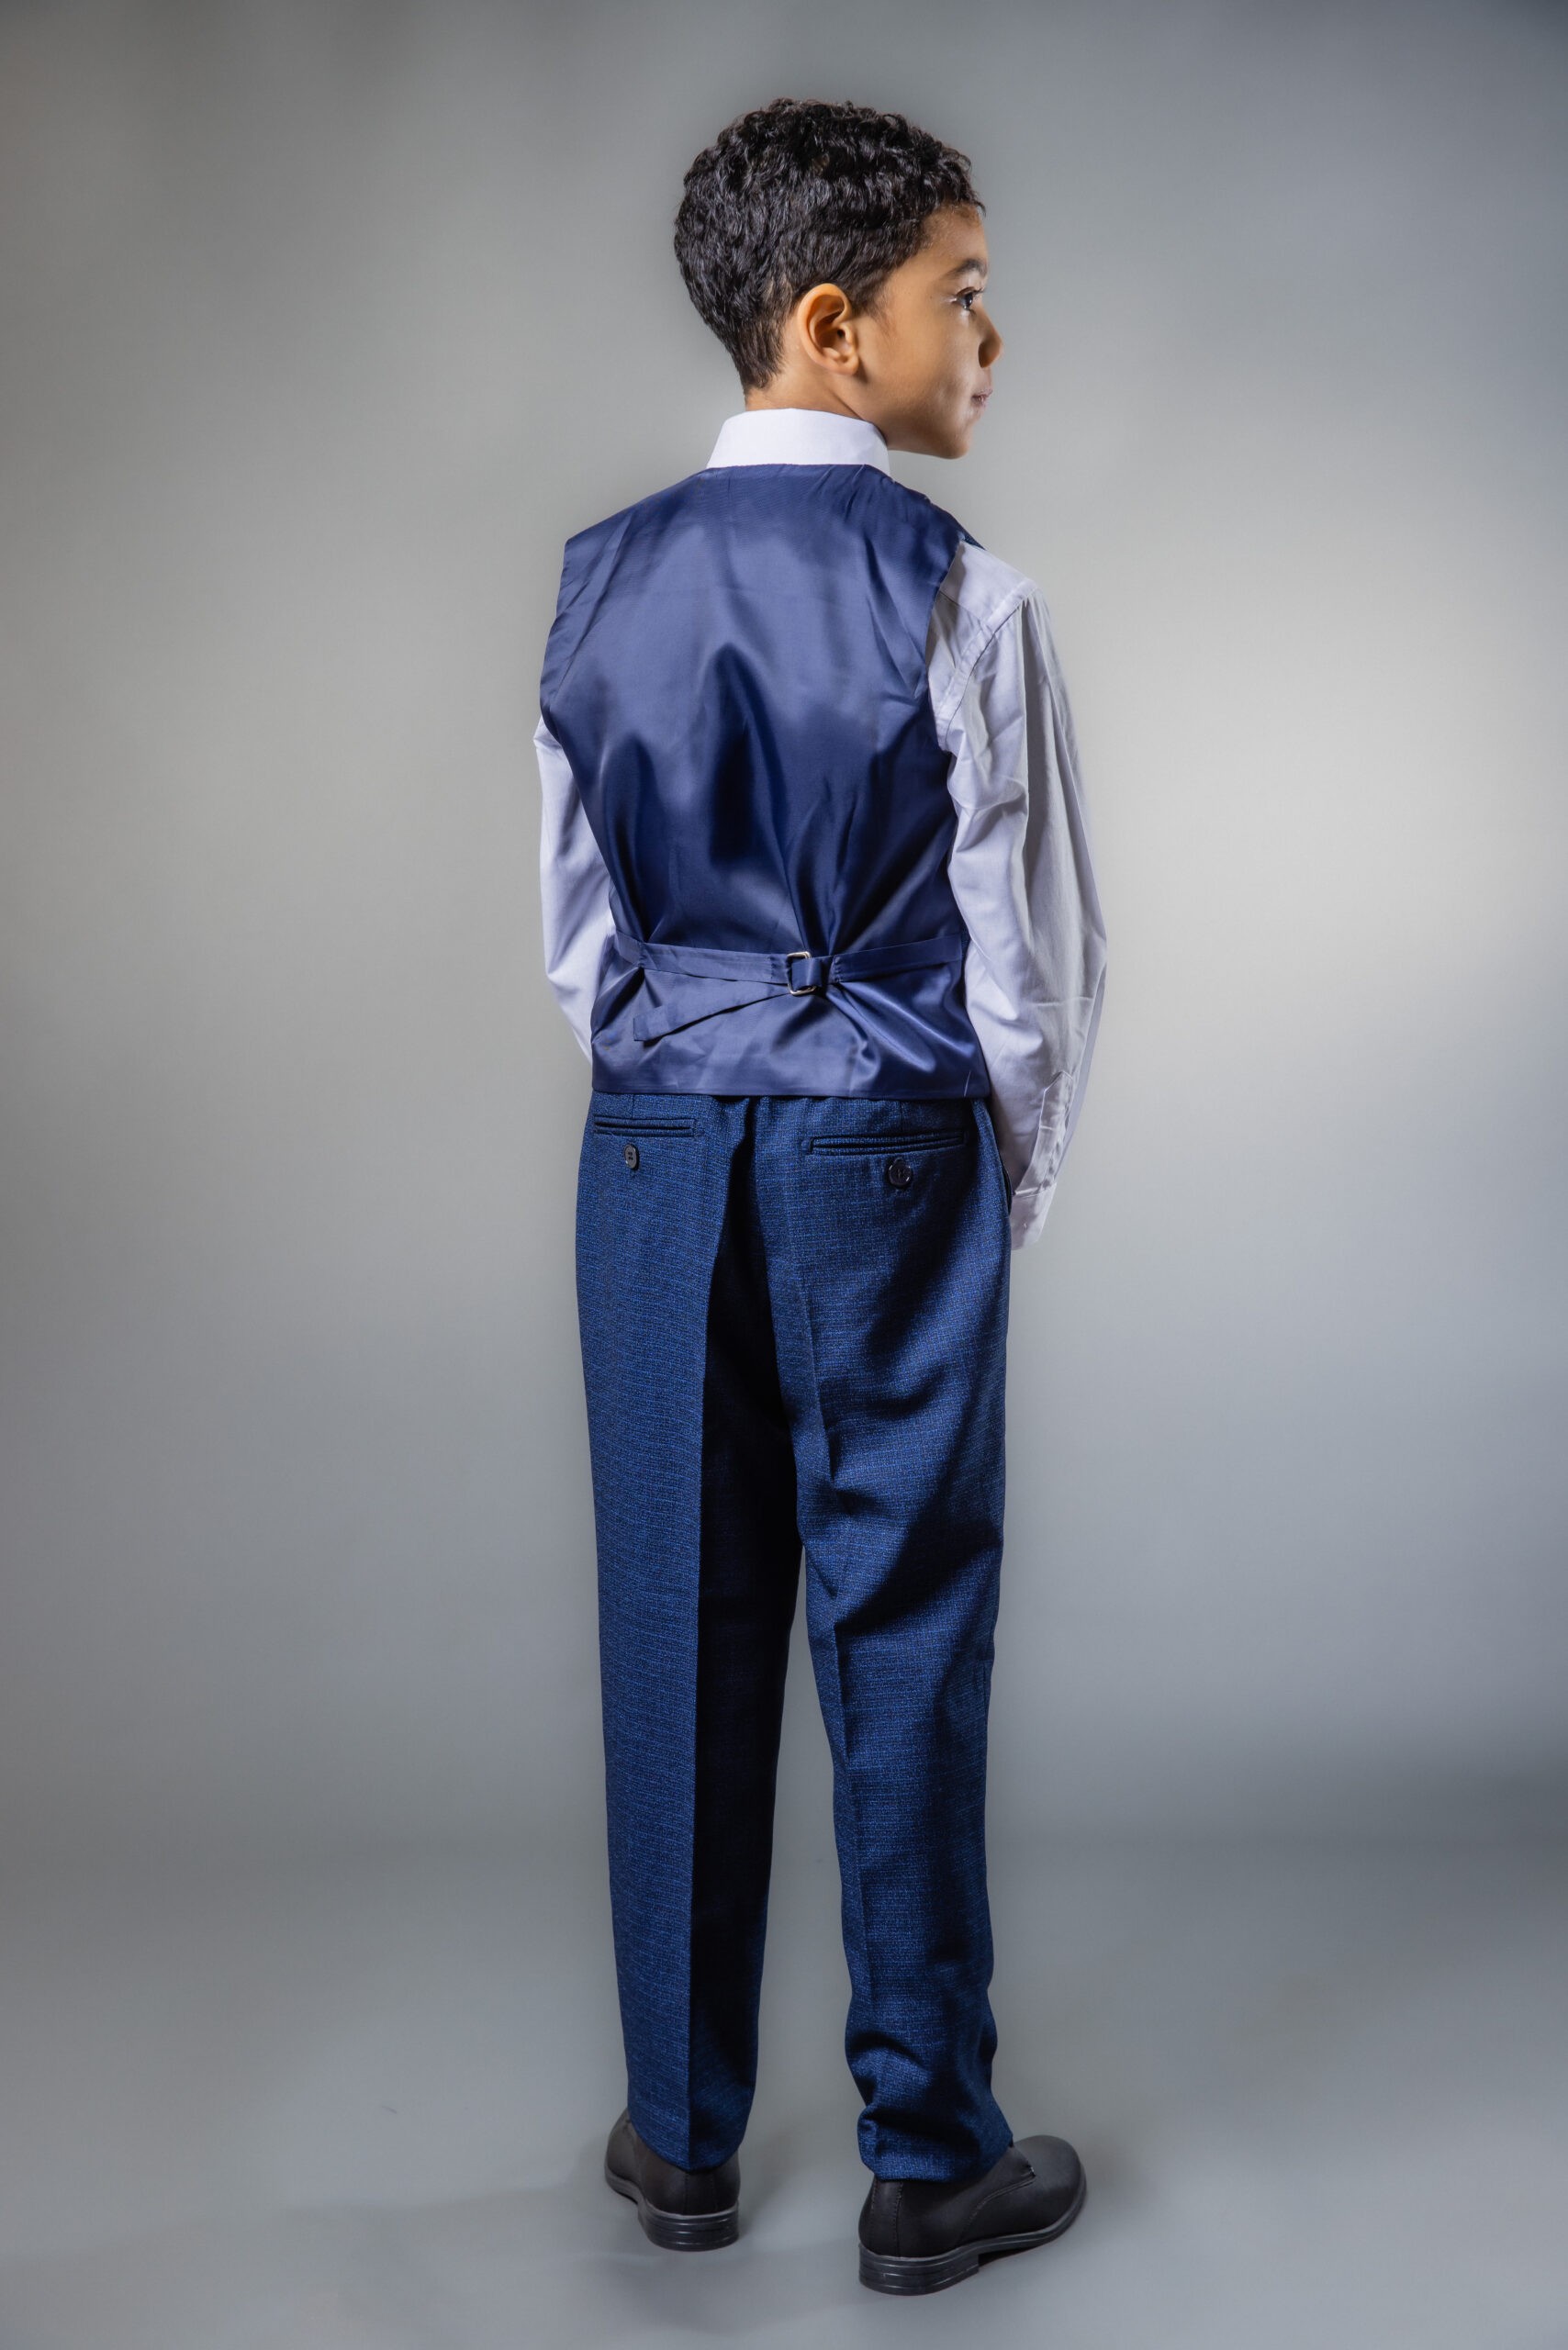 3-teiliges Slim-Fit-Anzugset für Jungen mit selbstgemustertem Muster in Indigoblau